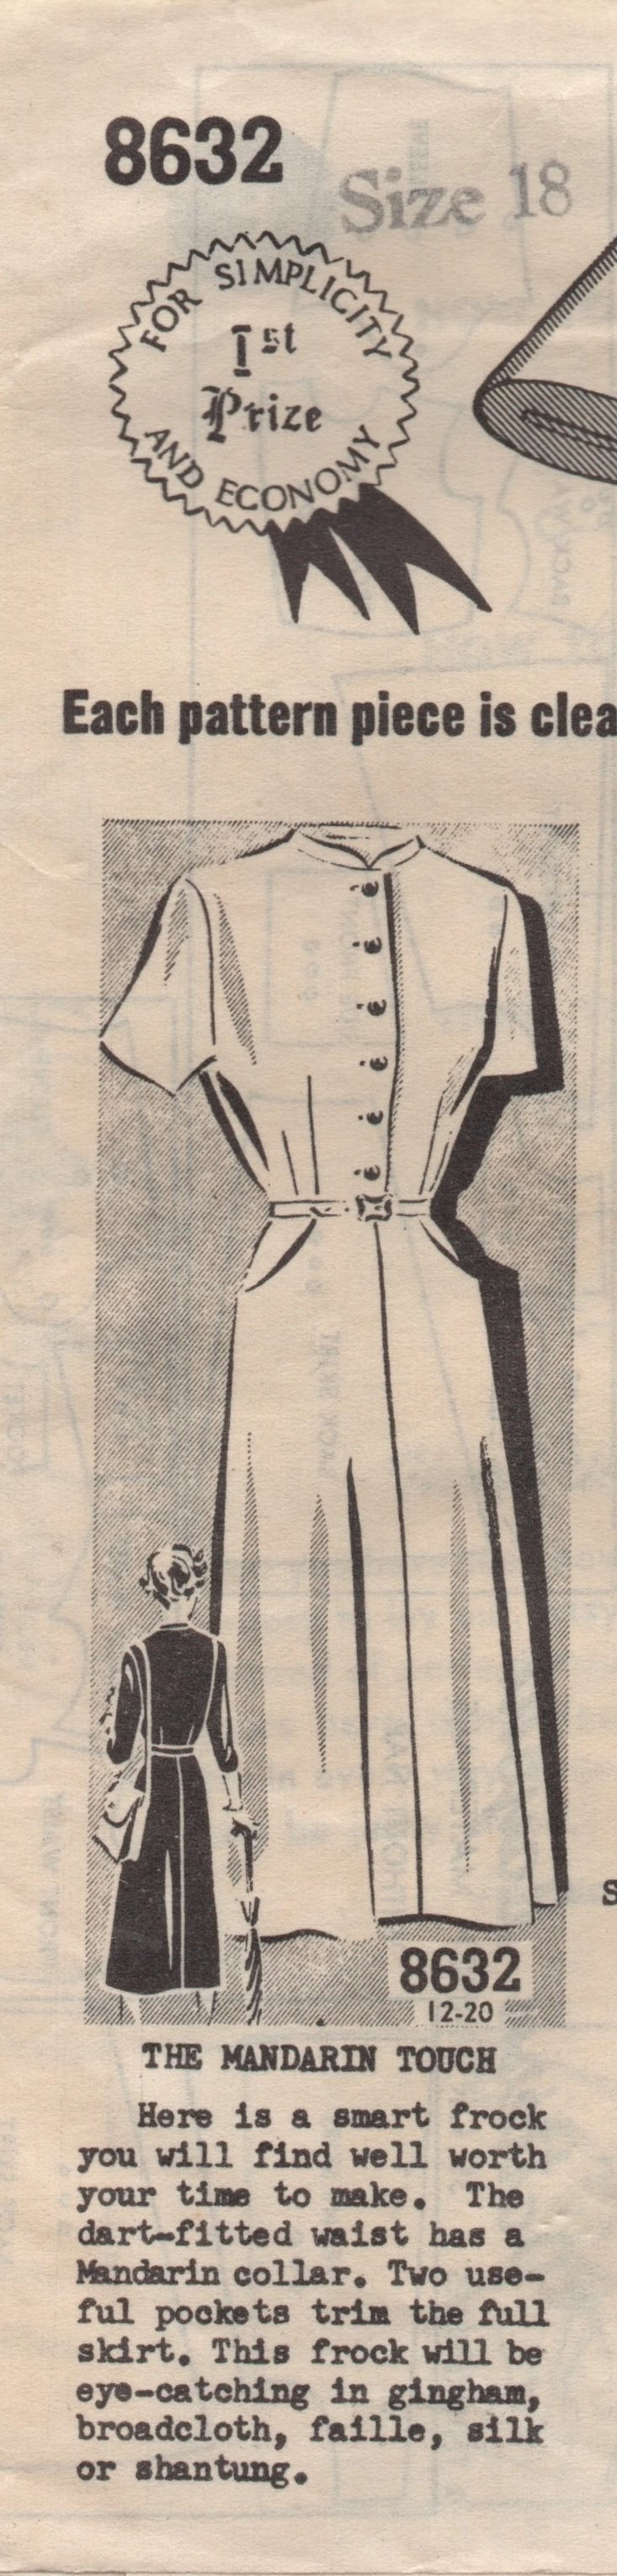 1950's Sew-Rite One Piece Shirtwaist Dress with Mandarin Collar - Bust 36